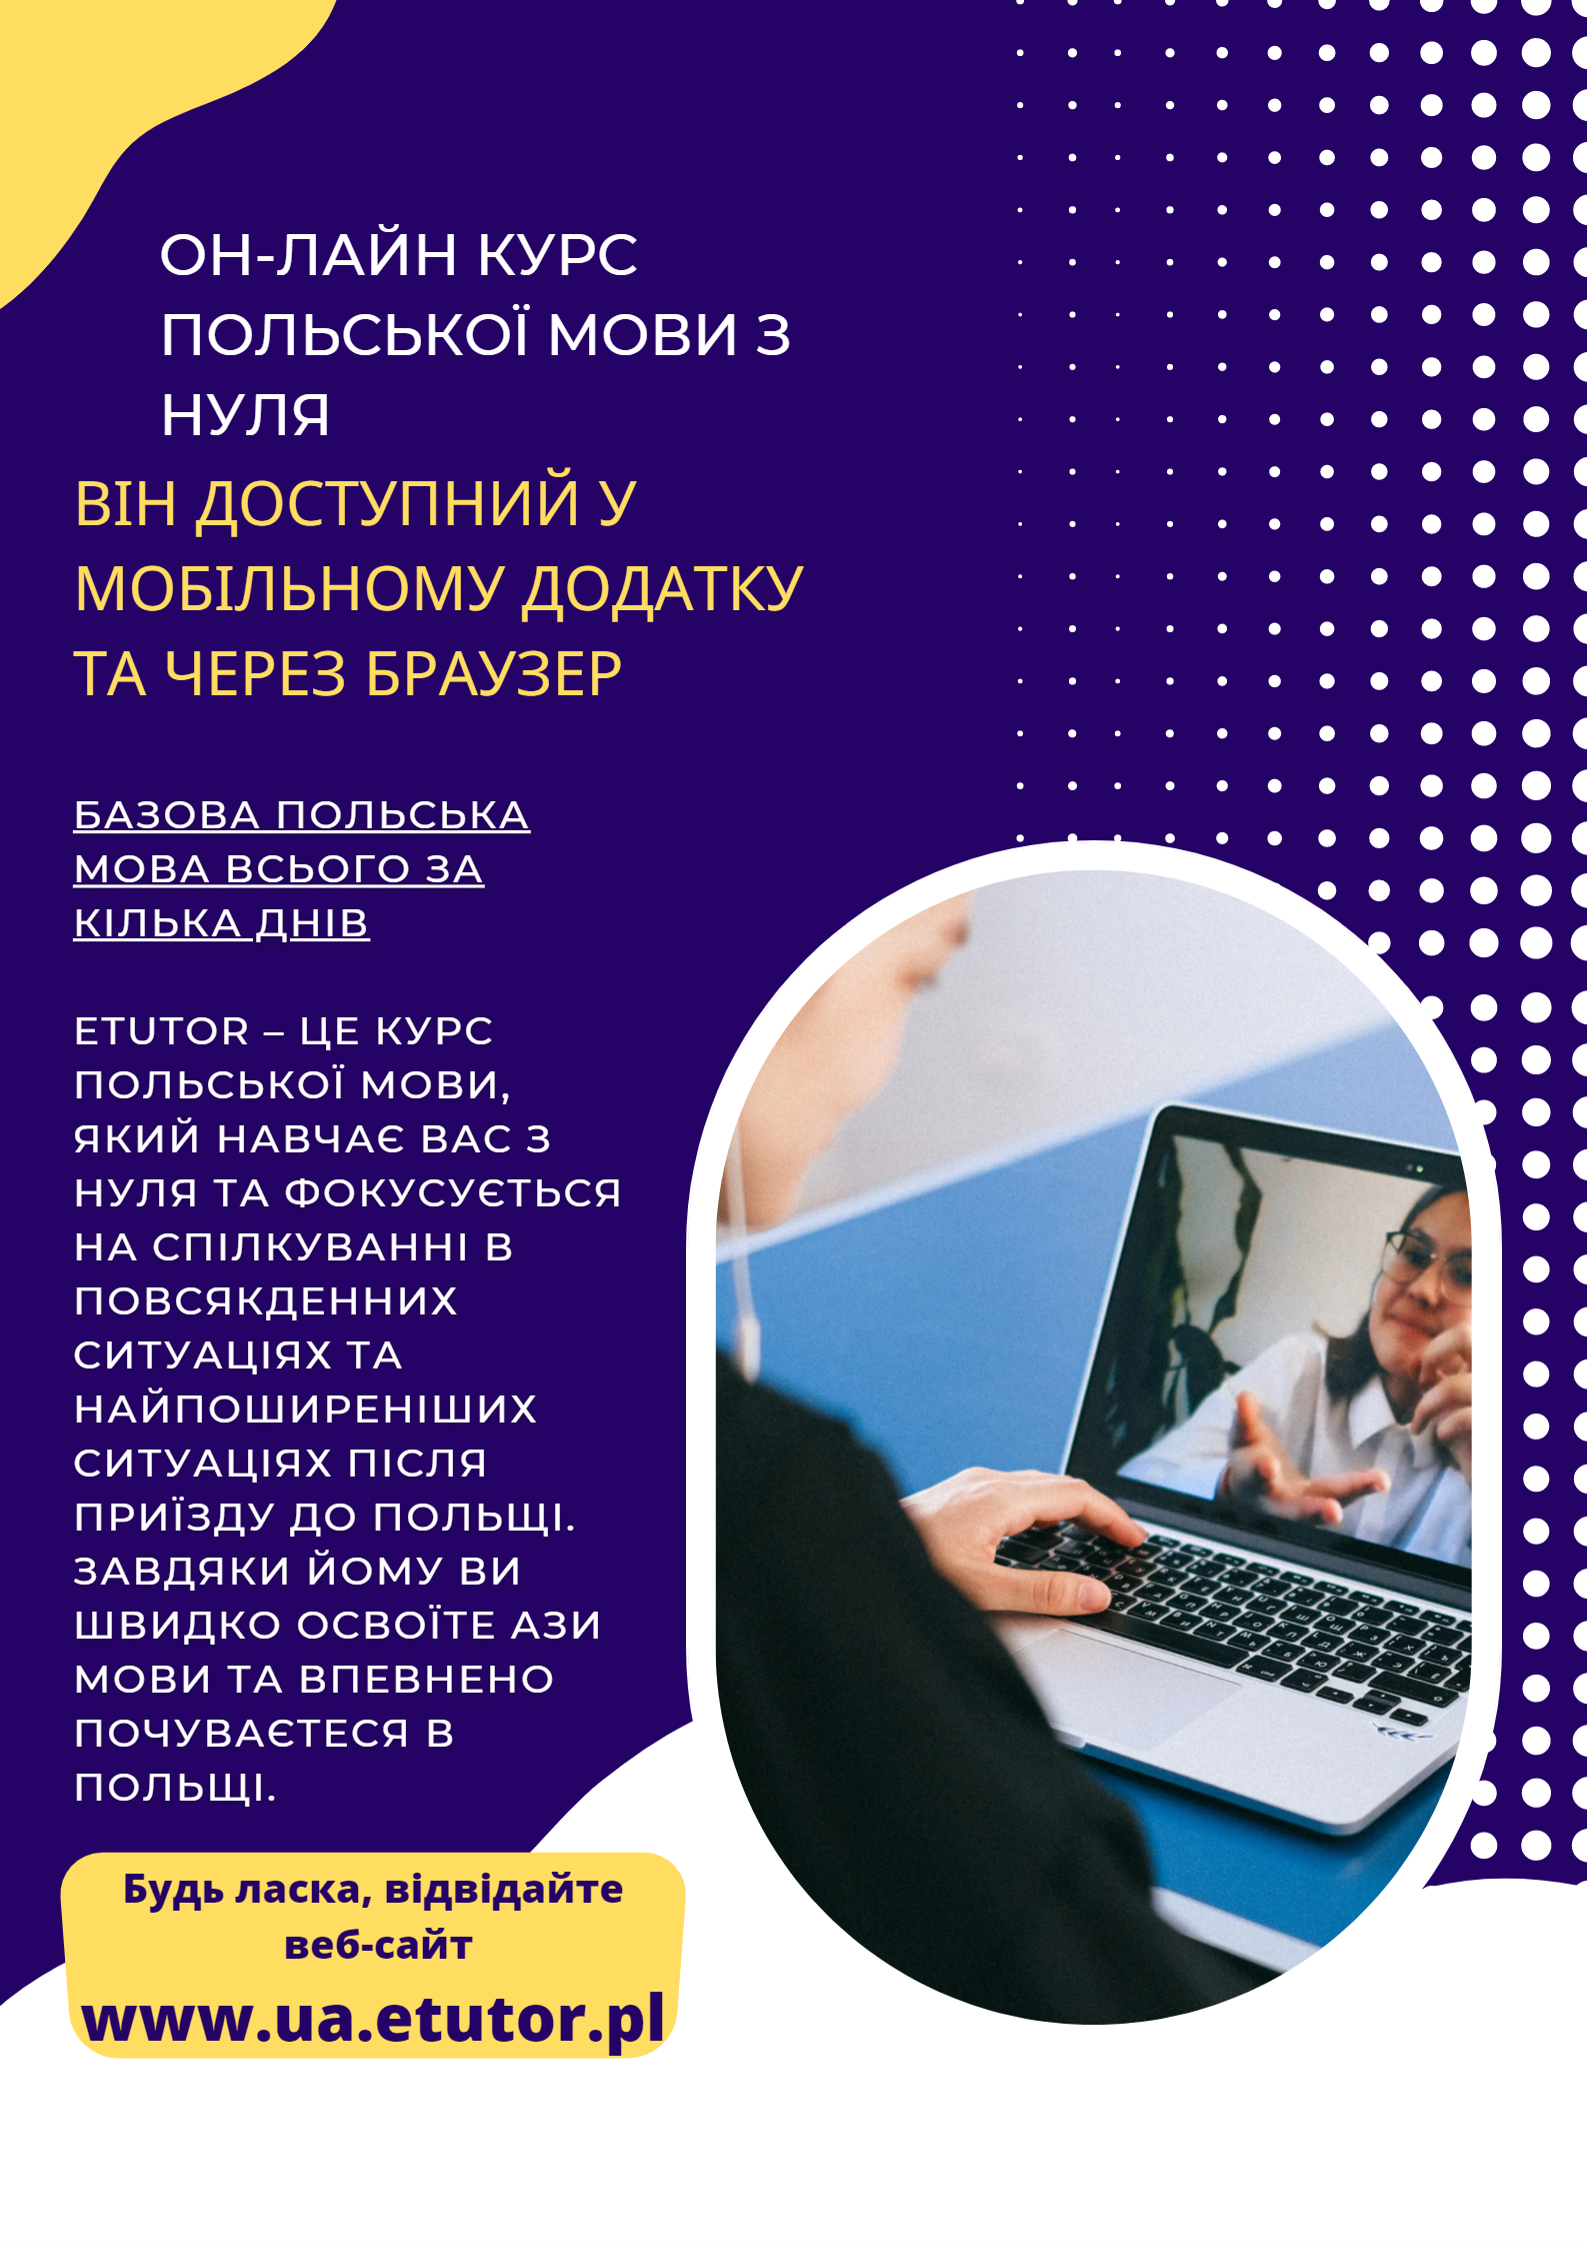 Kurs on-line języka polskiego od podstaw - ulotka w języku ukraińskim